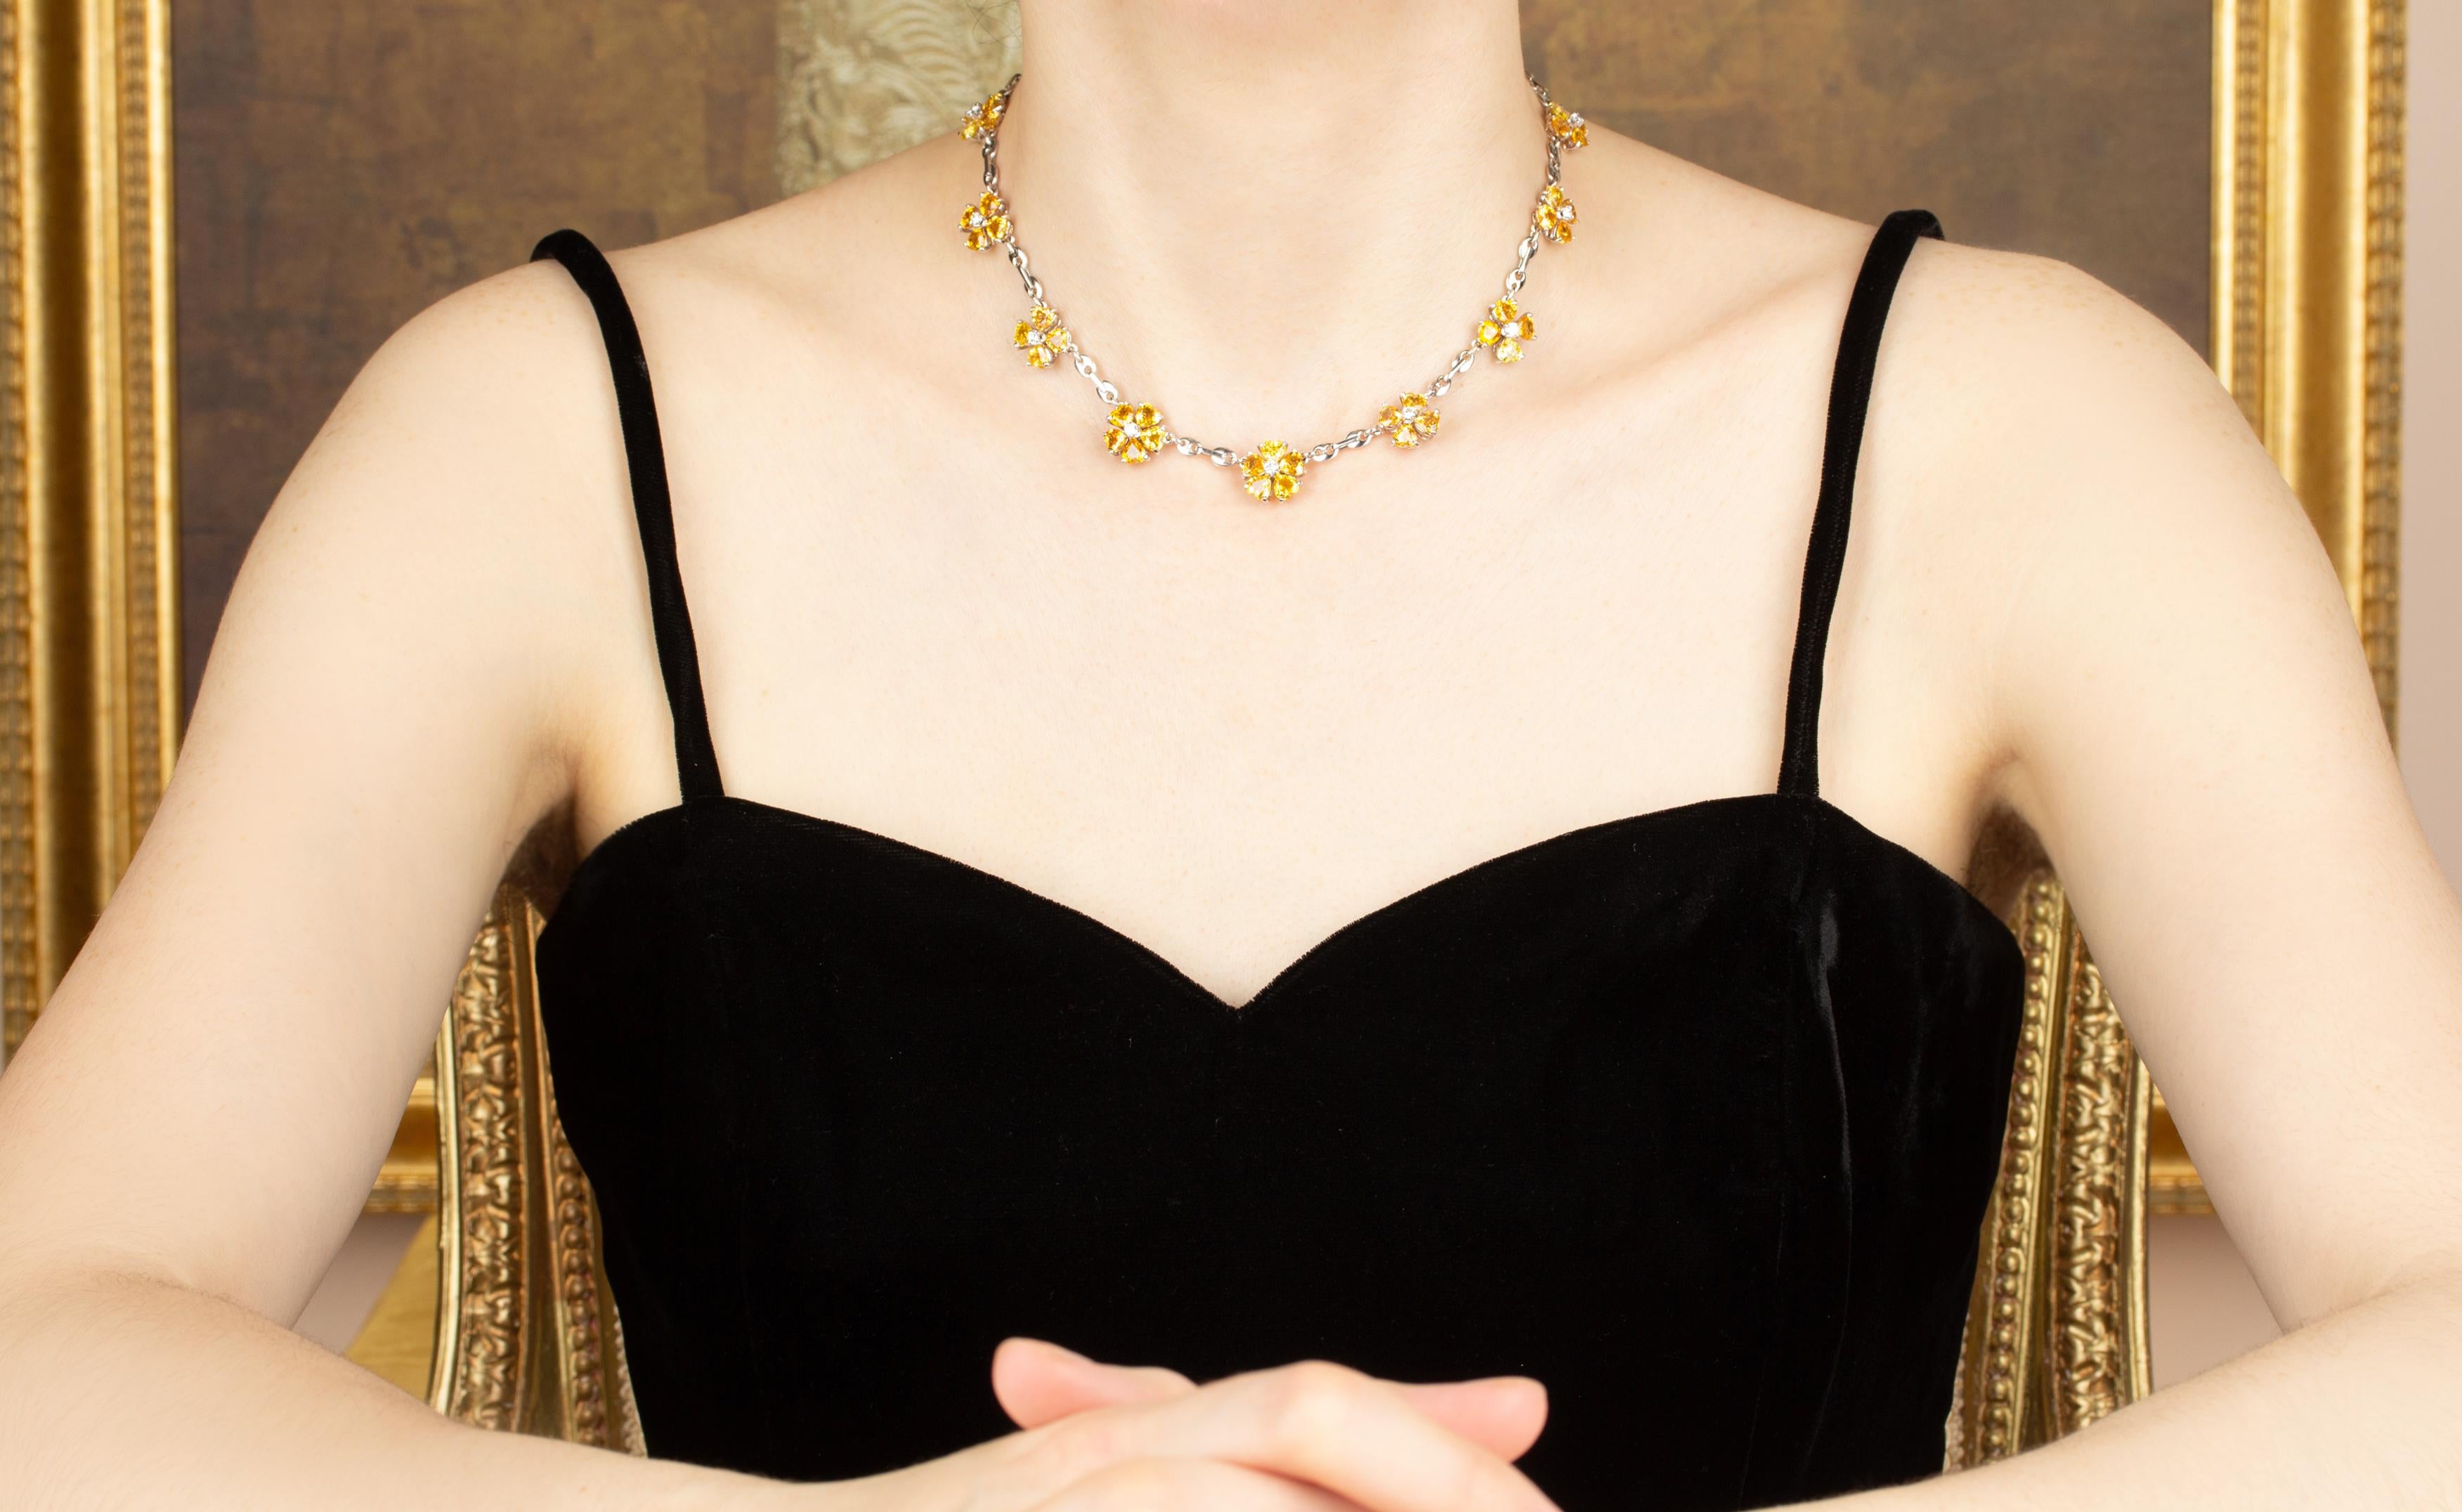 Le collier en saphir jaune comporte 10 fleurs serties de saphirs facettés en forme de cœur de couleur brillante pour un poids total de 14,10 carats. Le design est complété par 0,90 carats de diamants ronds de qualité supérieure (F/G-VVS).
Le collier